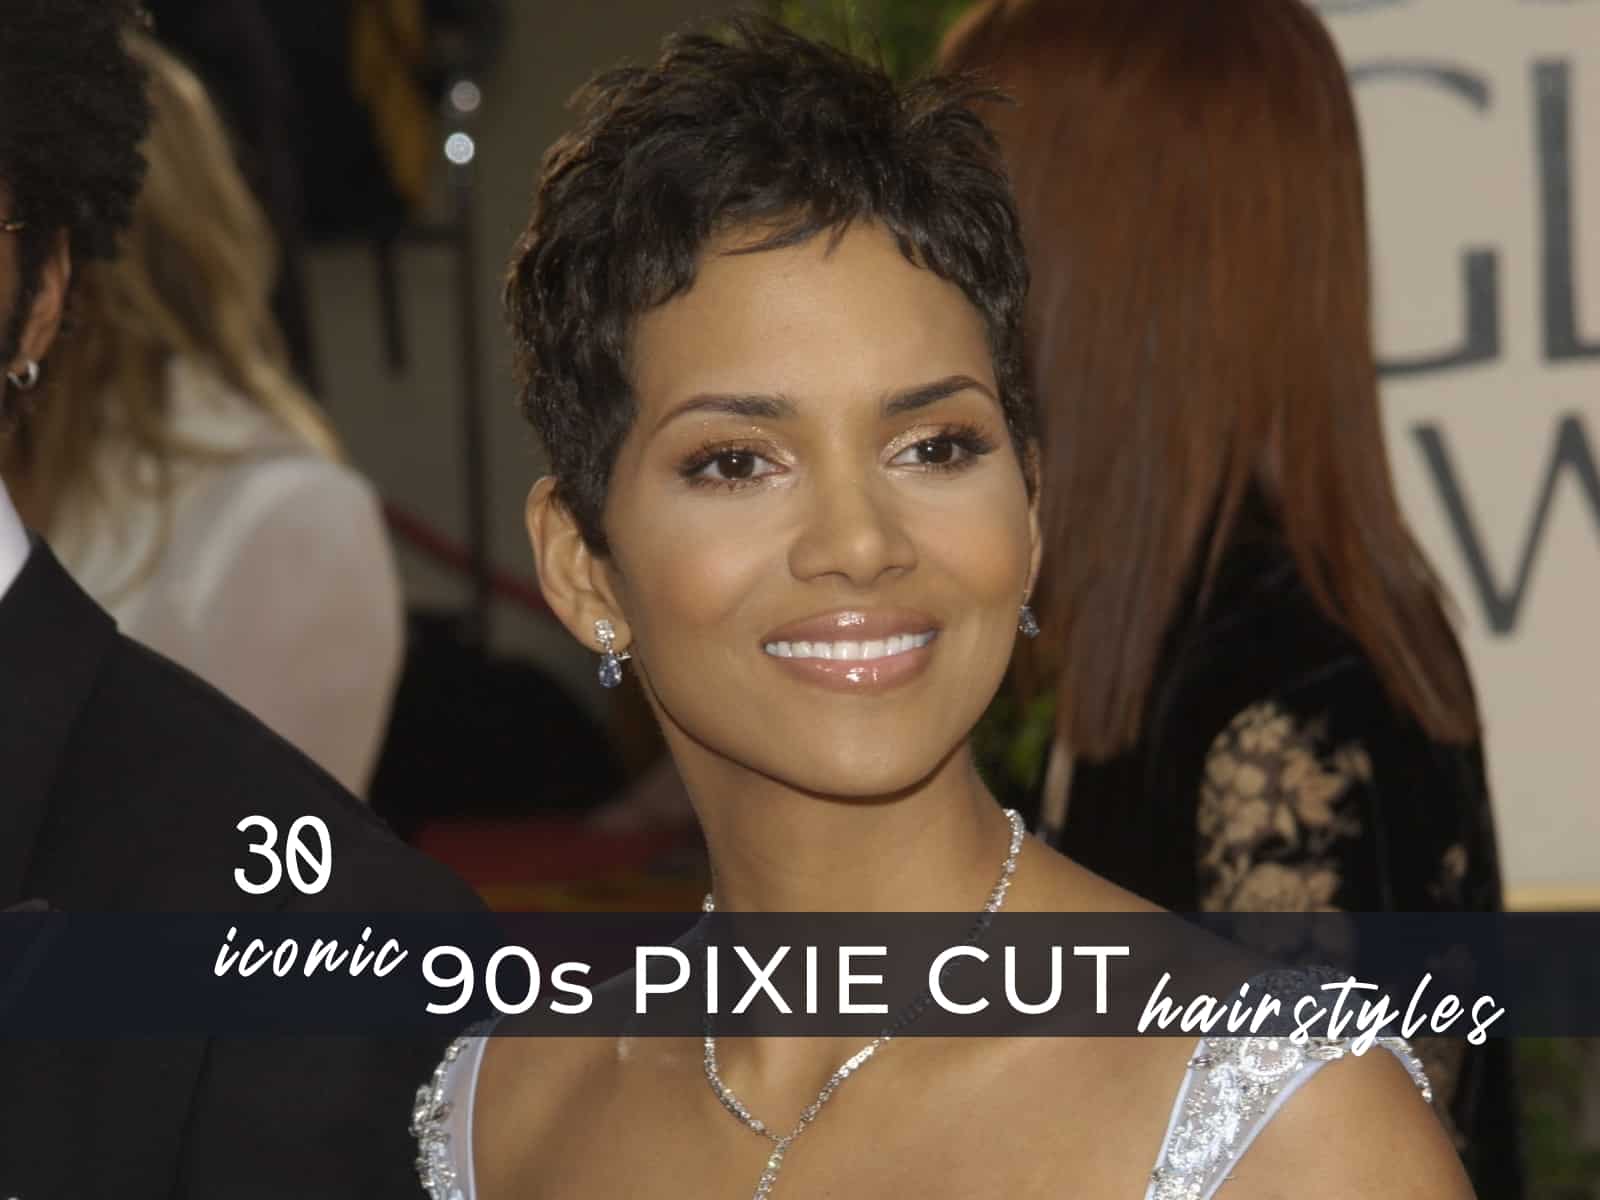 90s pixie cut